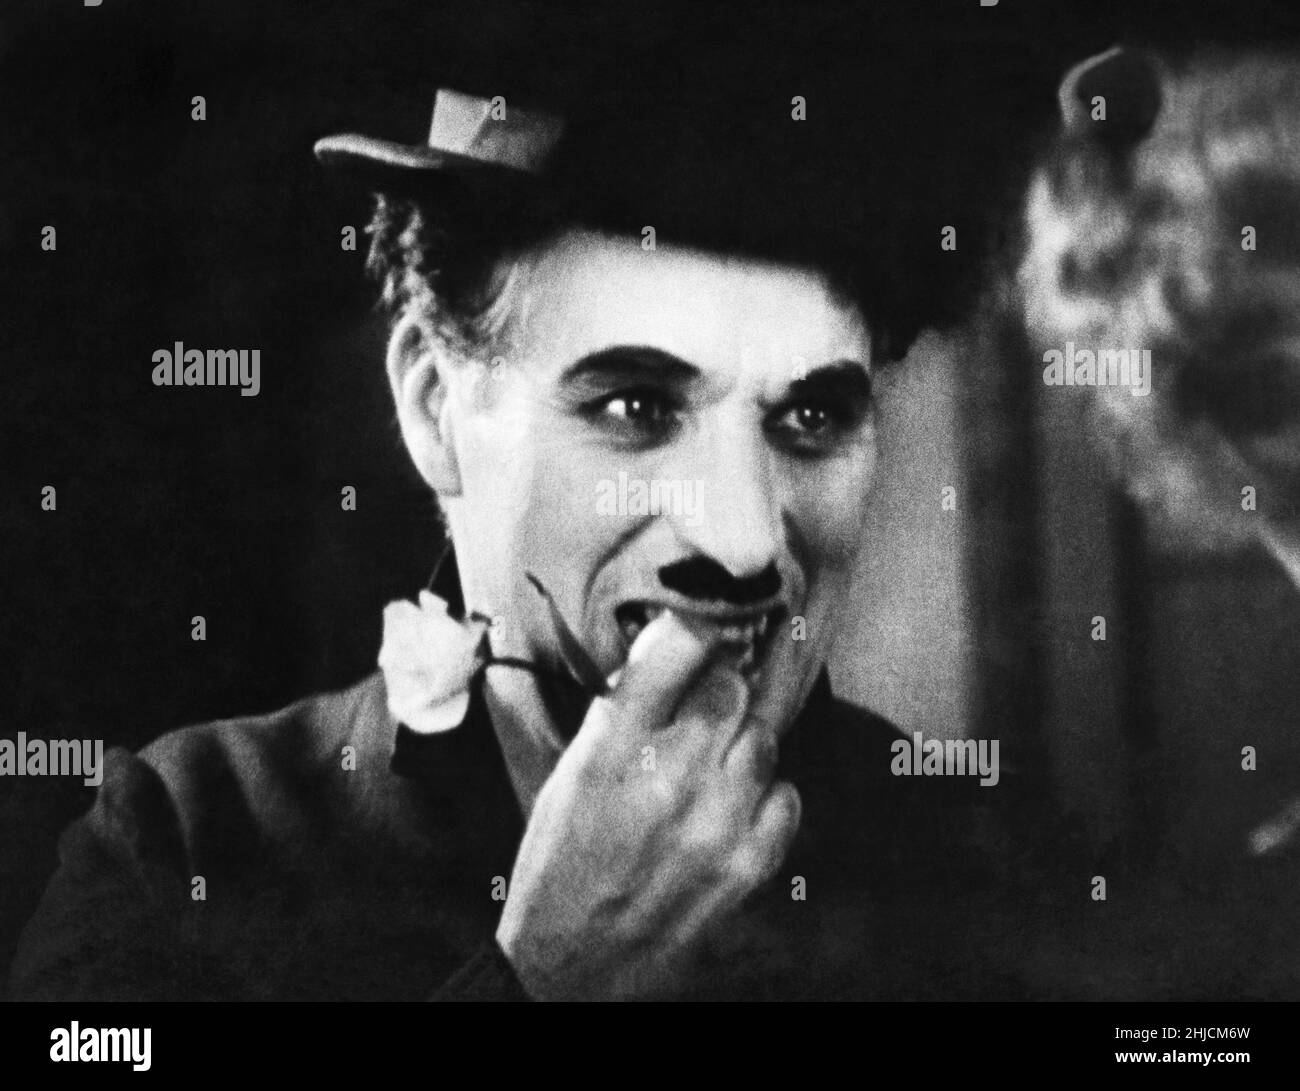 Charlie Chaplin (16 aprile 1889 - 25 dicembre 1977), la star del cinema muto inglese, nella scena finale di 'City Lights' (1931). Foto Stock